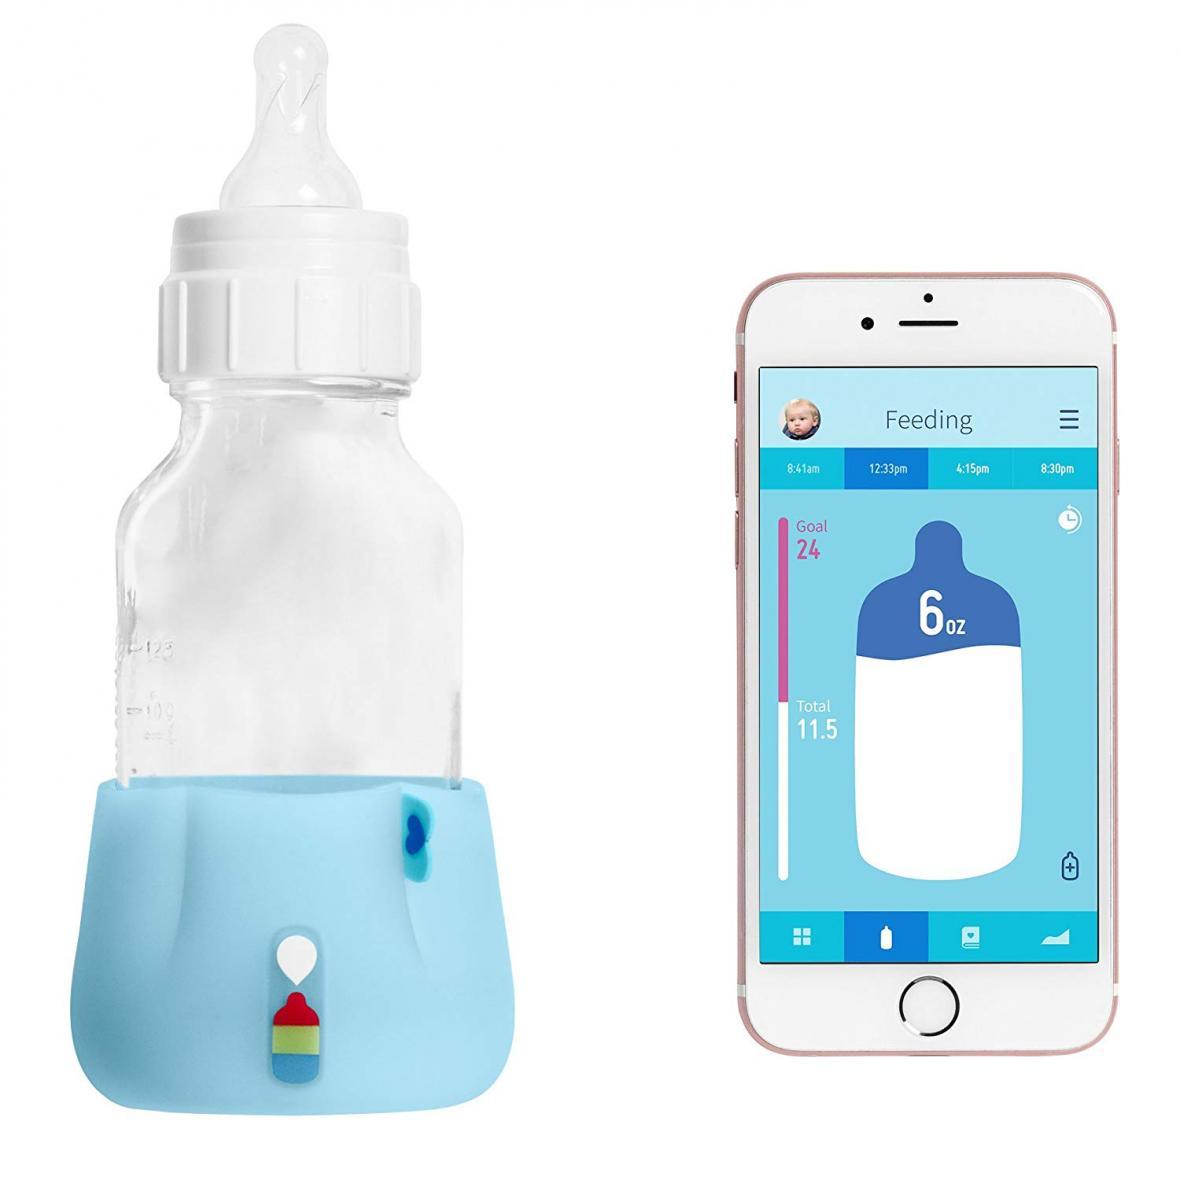 نظارت بر الگوی سلامت نوزادان با فناوری